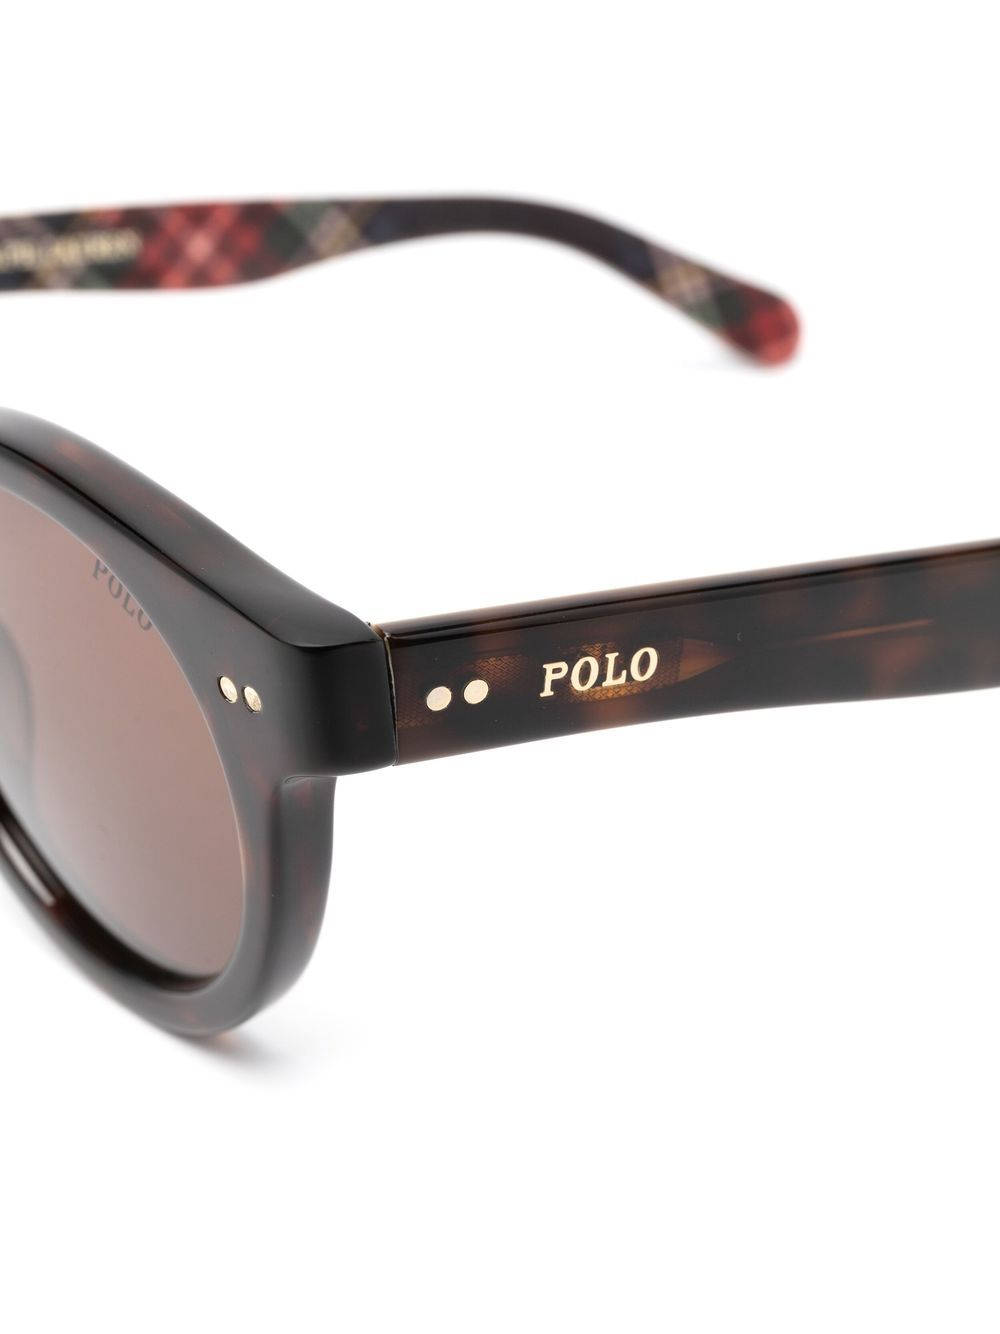 Polo Sunglasses Brand Wallpaper